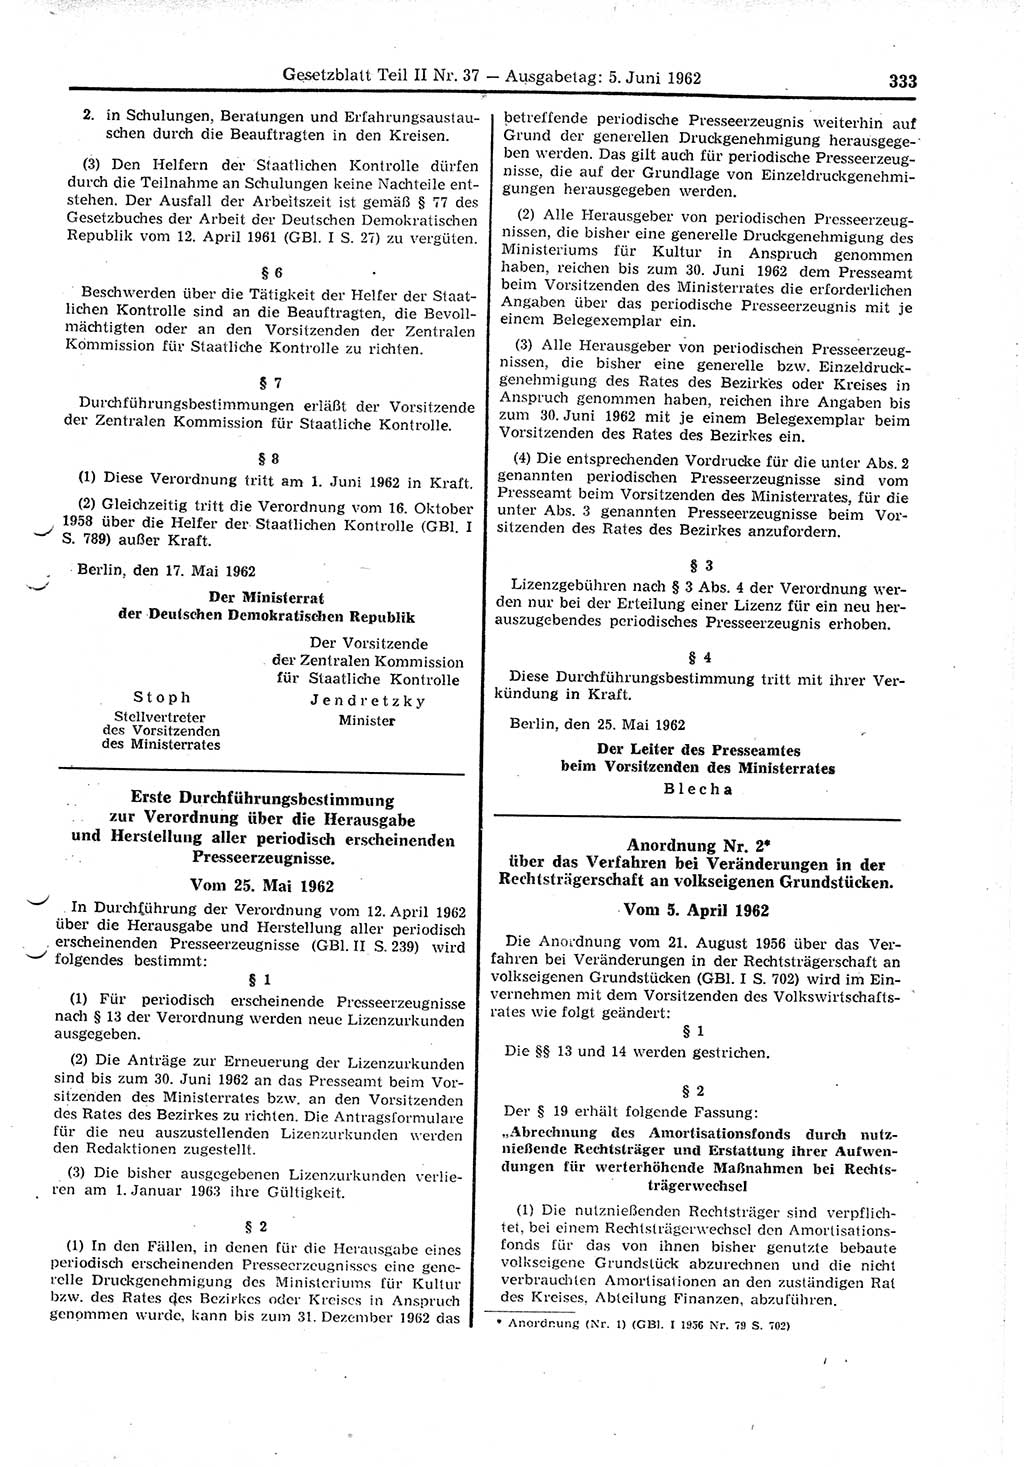 Gesetzblatt (GBl.) der Deutschen Demokratischen Republik (DDR) Teil ⅠⅠ 1962, Seite 333 (GBl. DDR ⅠⅠ 1962, S. 333)